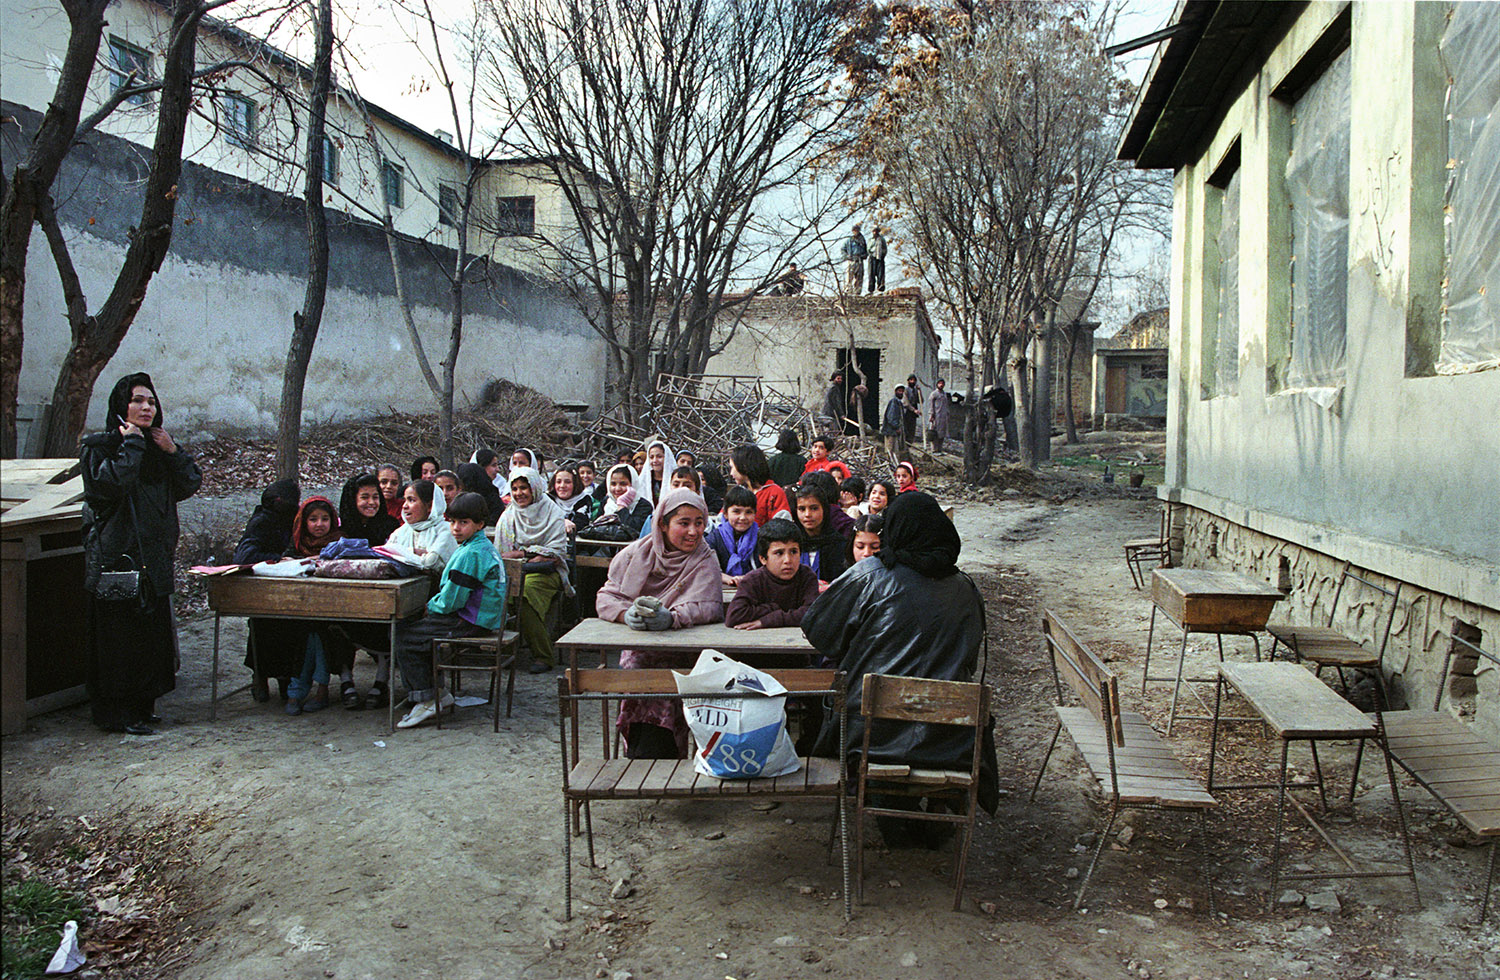 Au Lycée Malalai de Kaboul. Les enfants sont assis, la classe se fait à l'extérieur, dans la cour, les bâtiments ont été détruits. La classe est mixte.